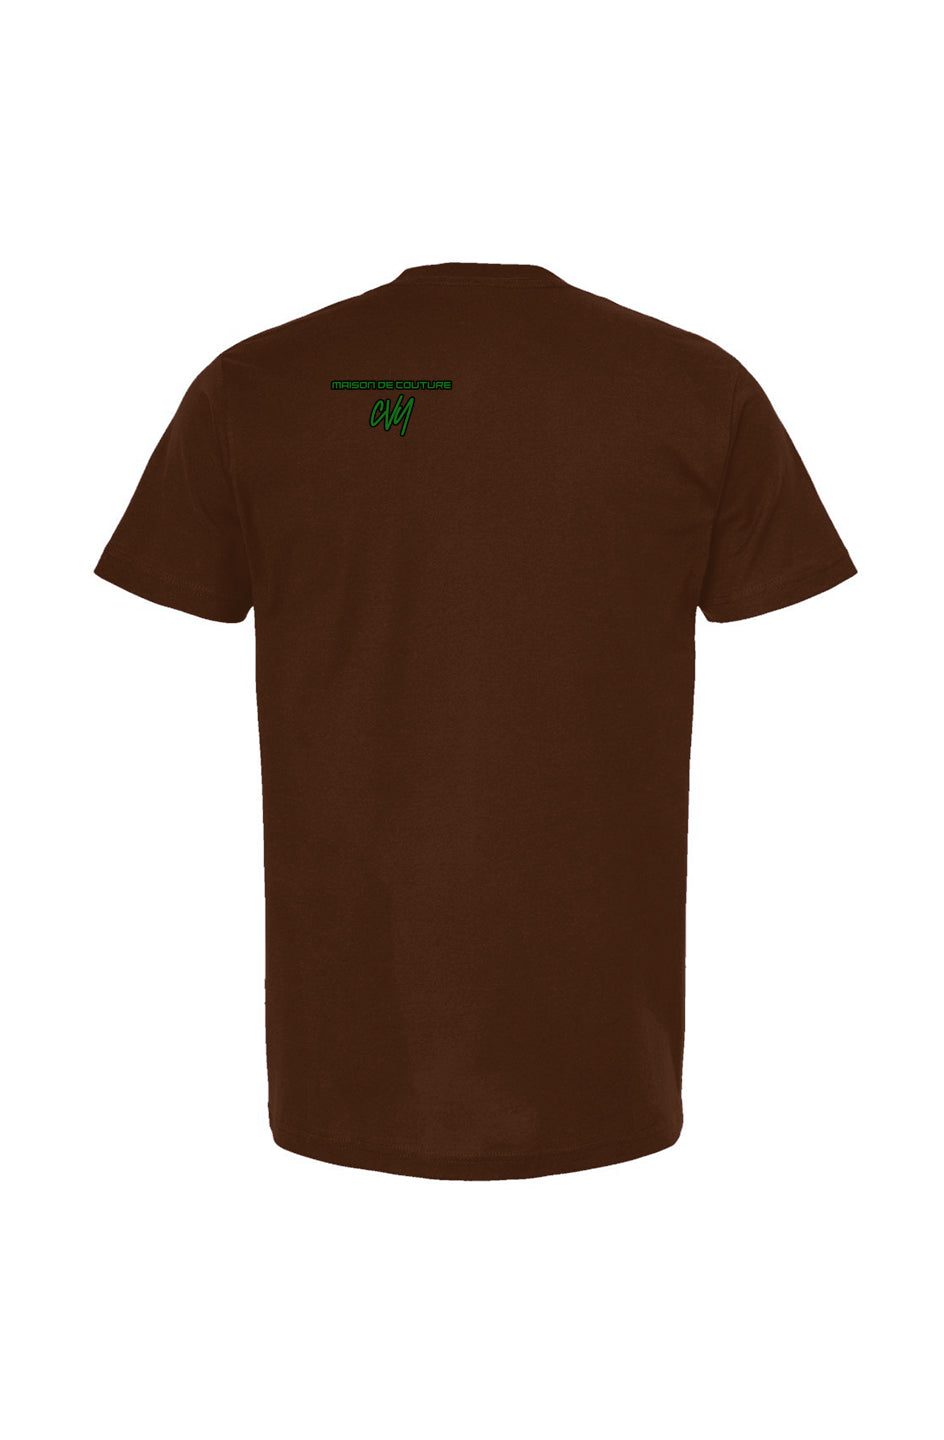 GS - Brown Unisex T Shirt